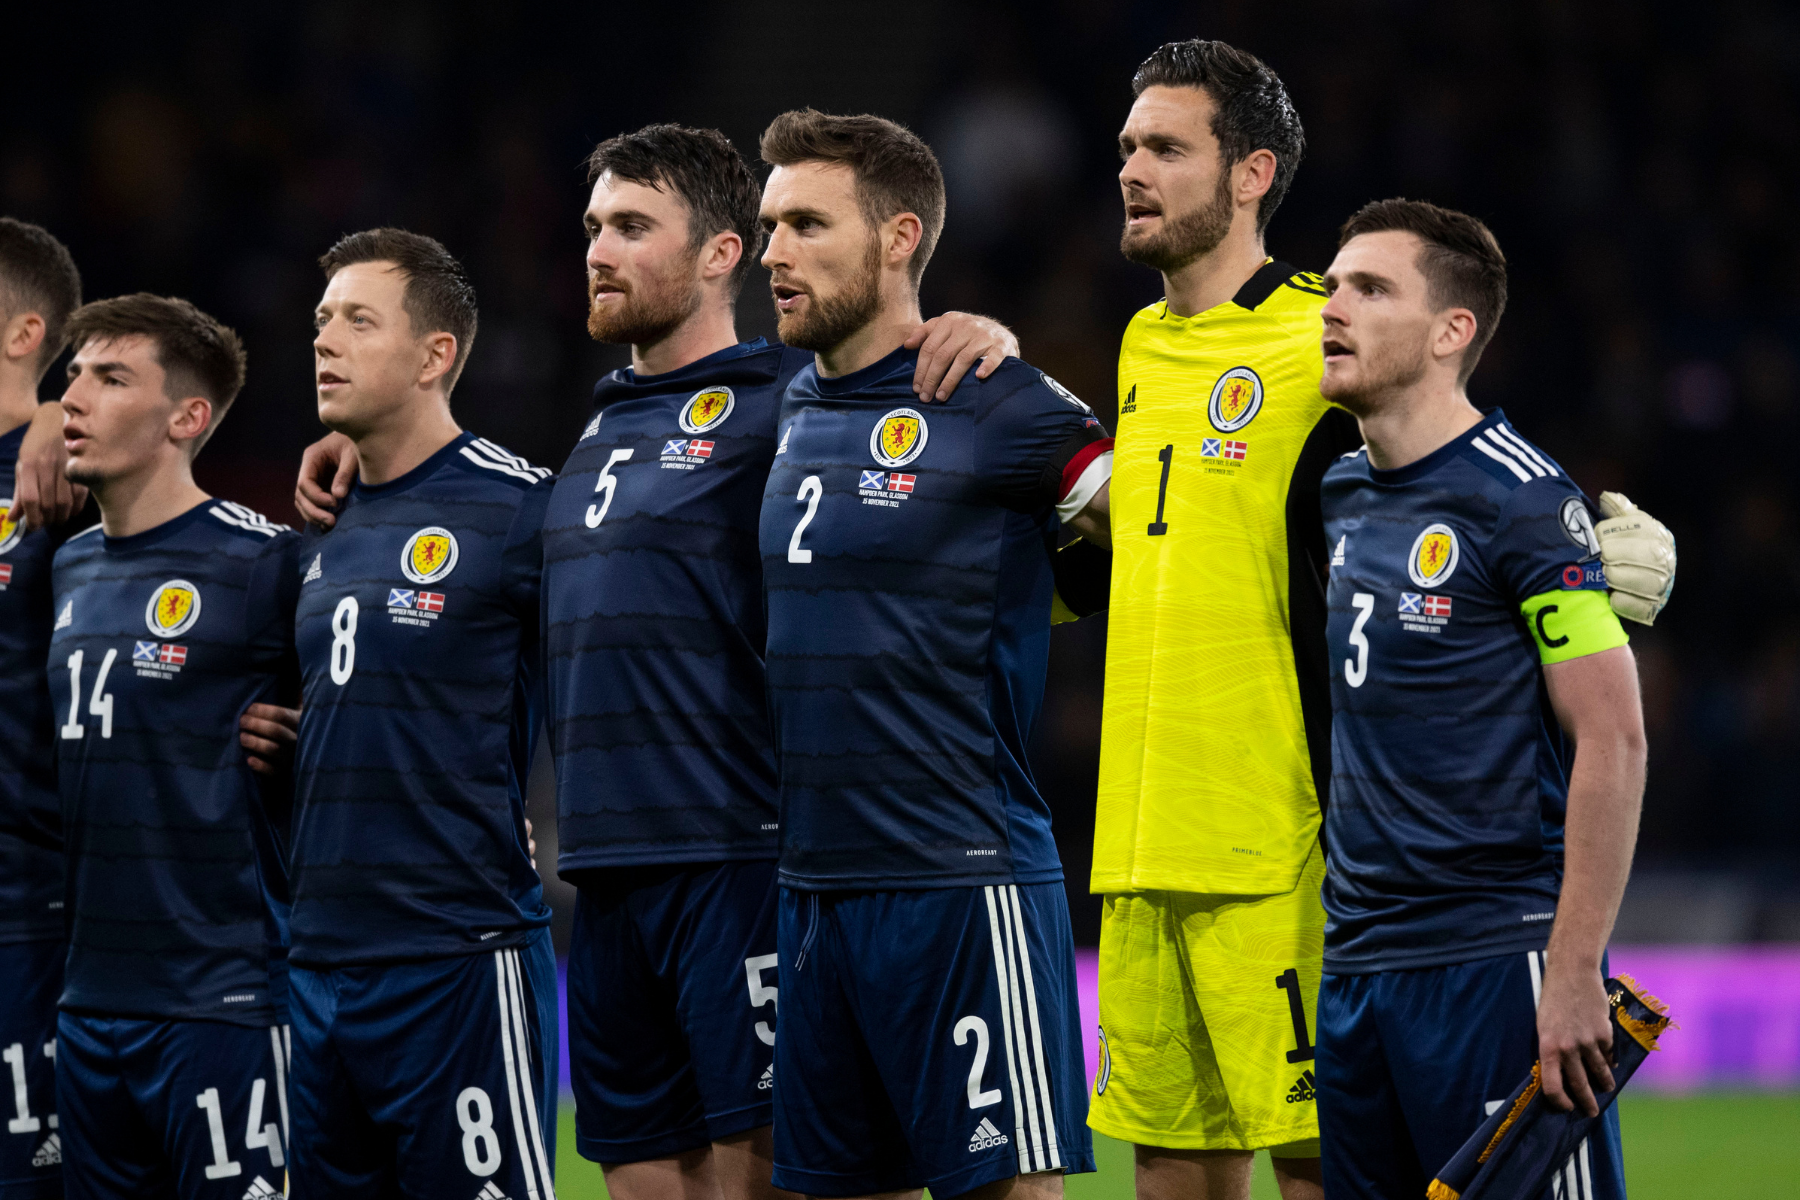 Scotland team